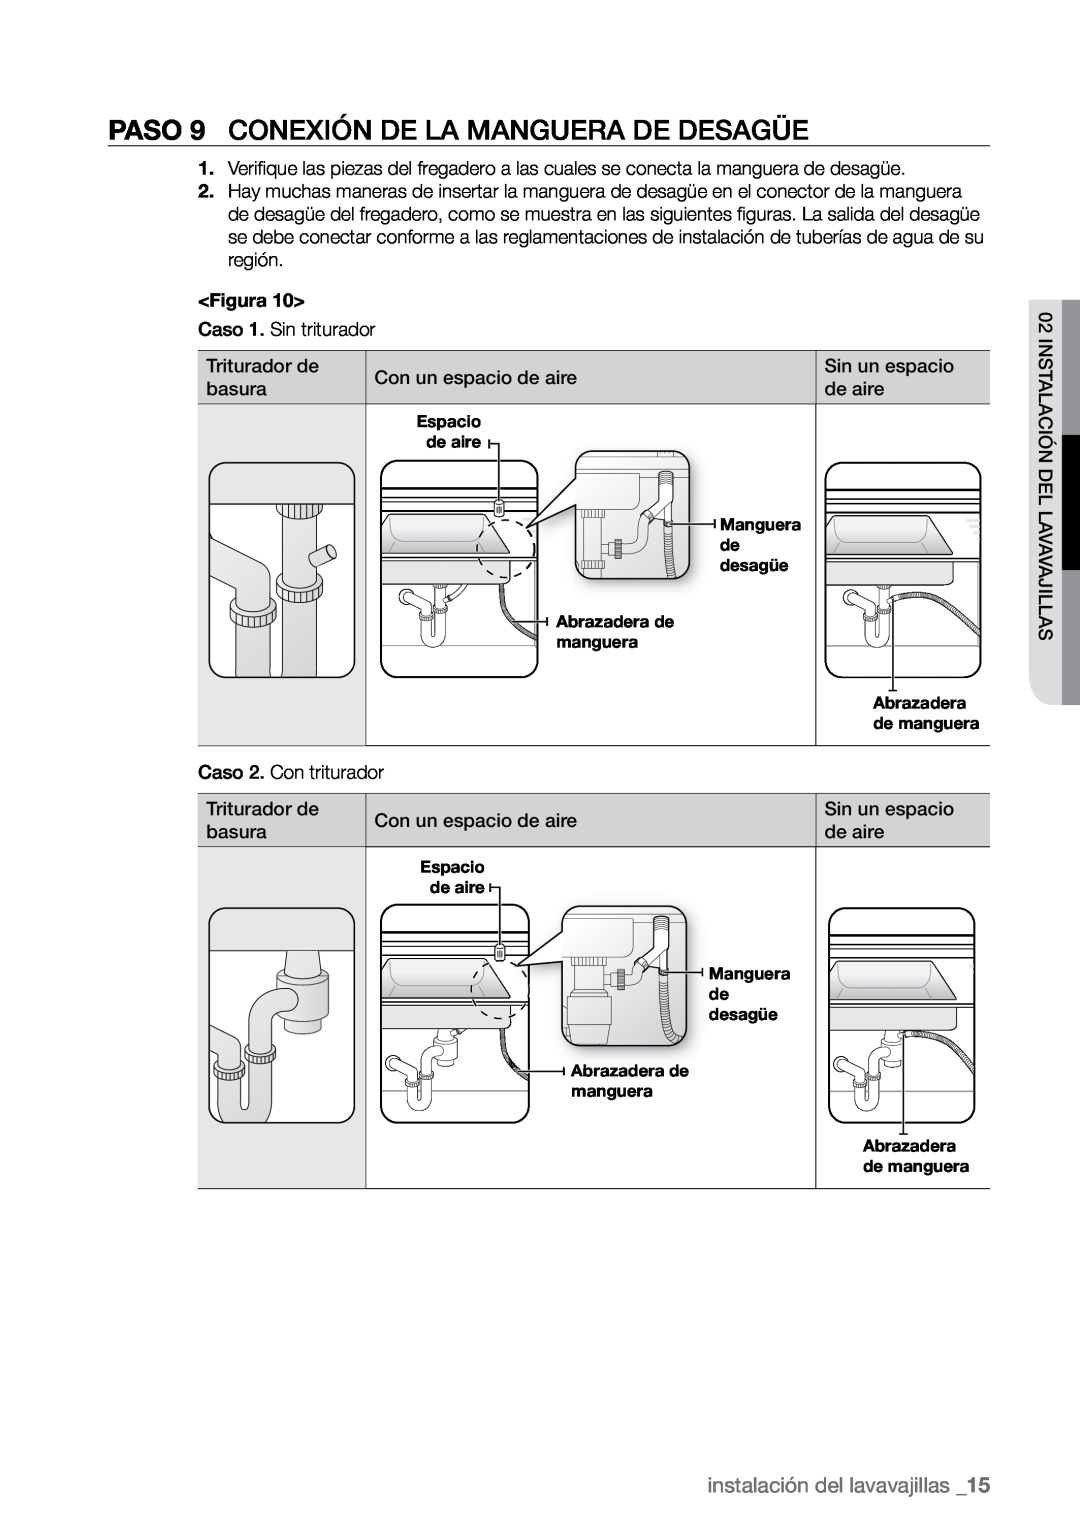 Samsung DMR78, DMR57, DMR77 manual PASO 9 Conexión de la manguera de desagüe, instalación del lavavajillas 